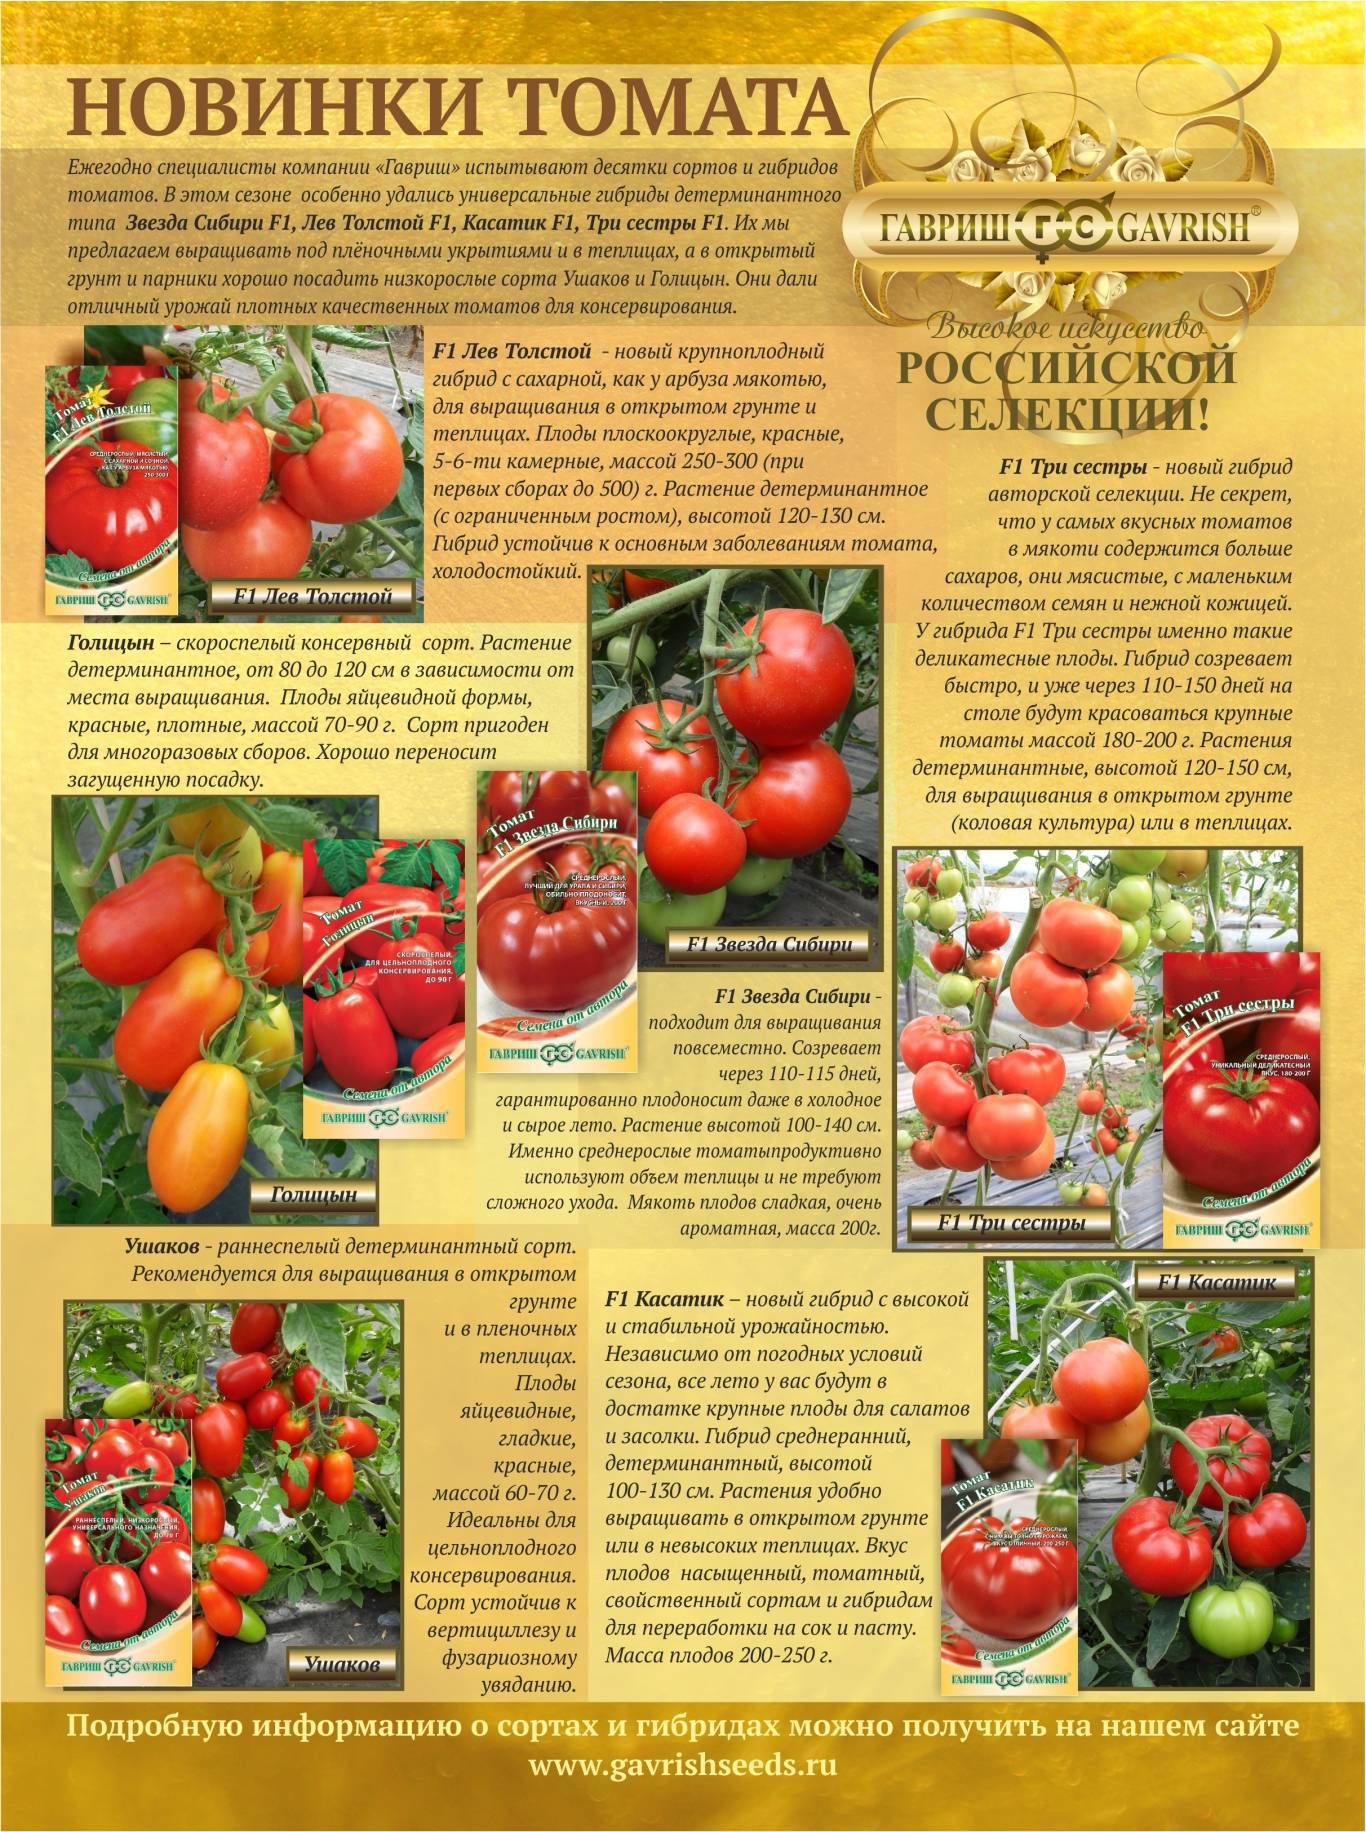 Общее описание томата Пламя, выращивание рассады и урожайность